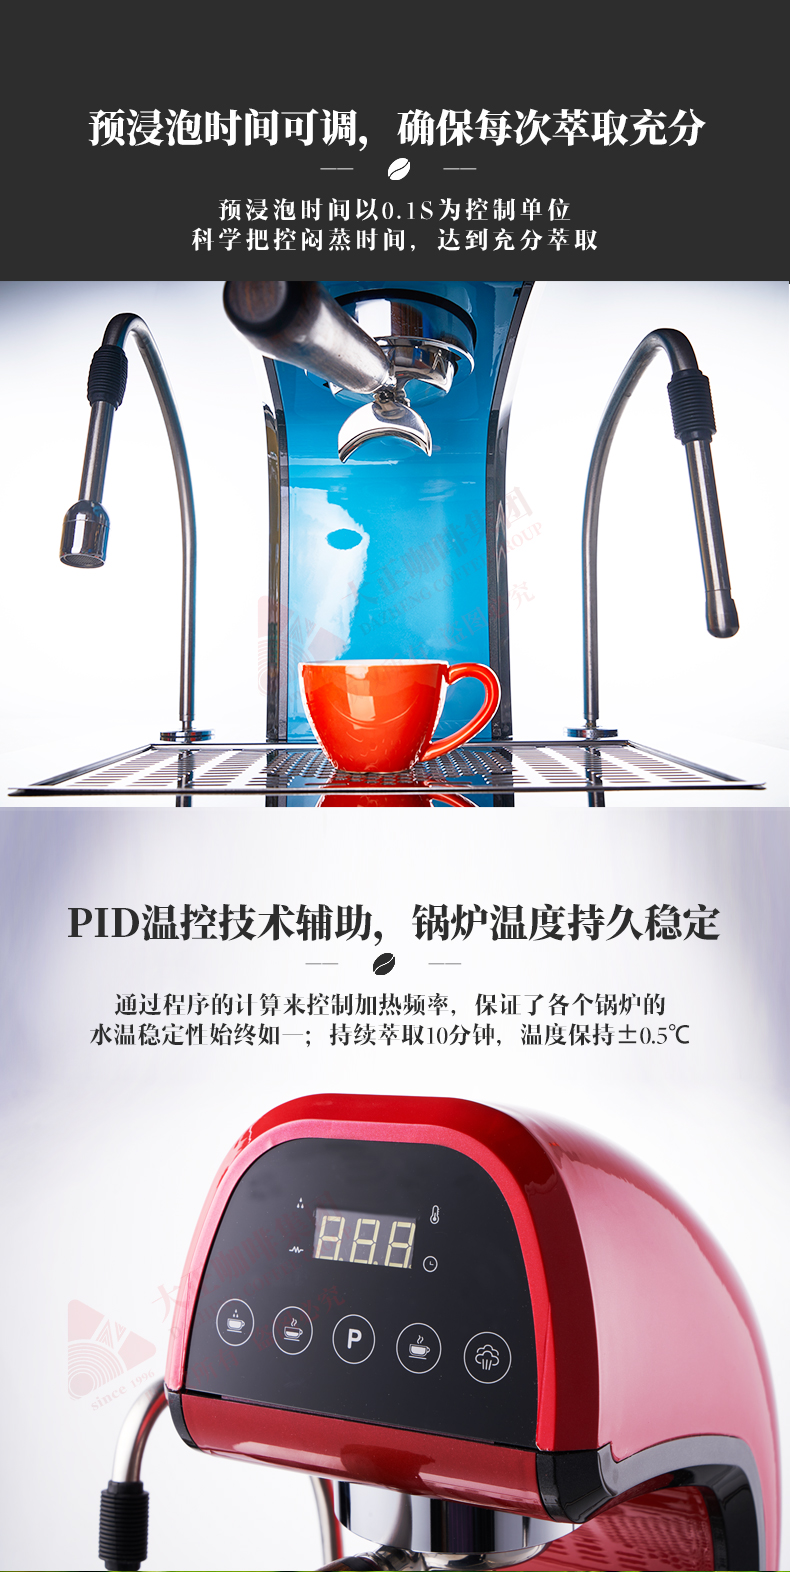 曼巴单头桌面嵌入式咖茶机,特质萃茶手柄配置,为专业萃茶体验设计